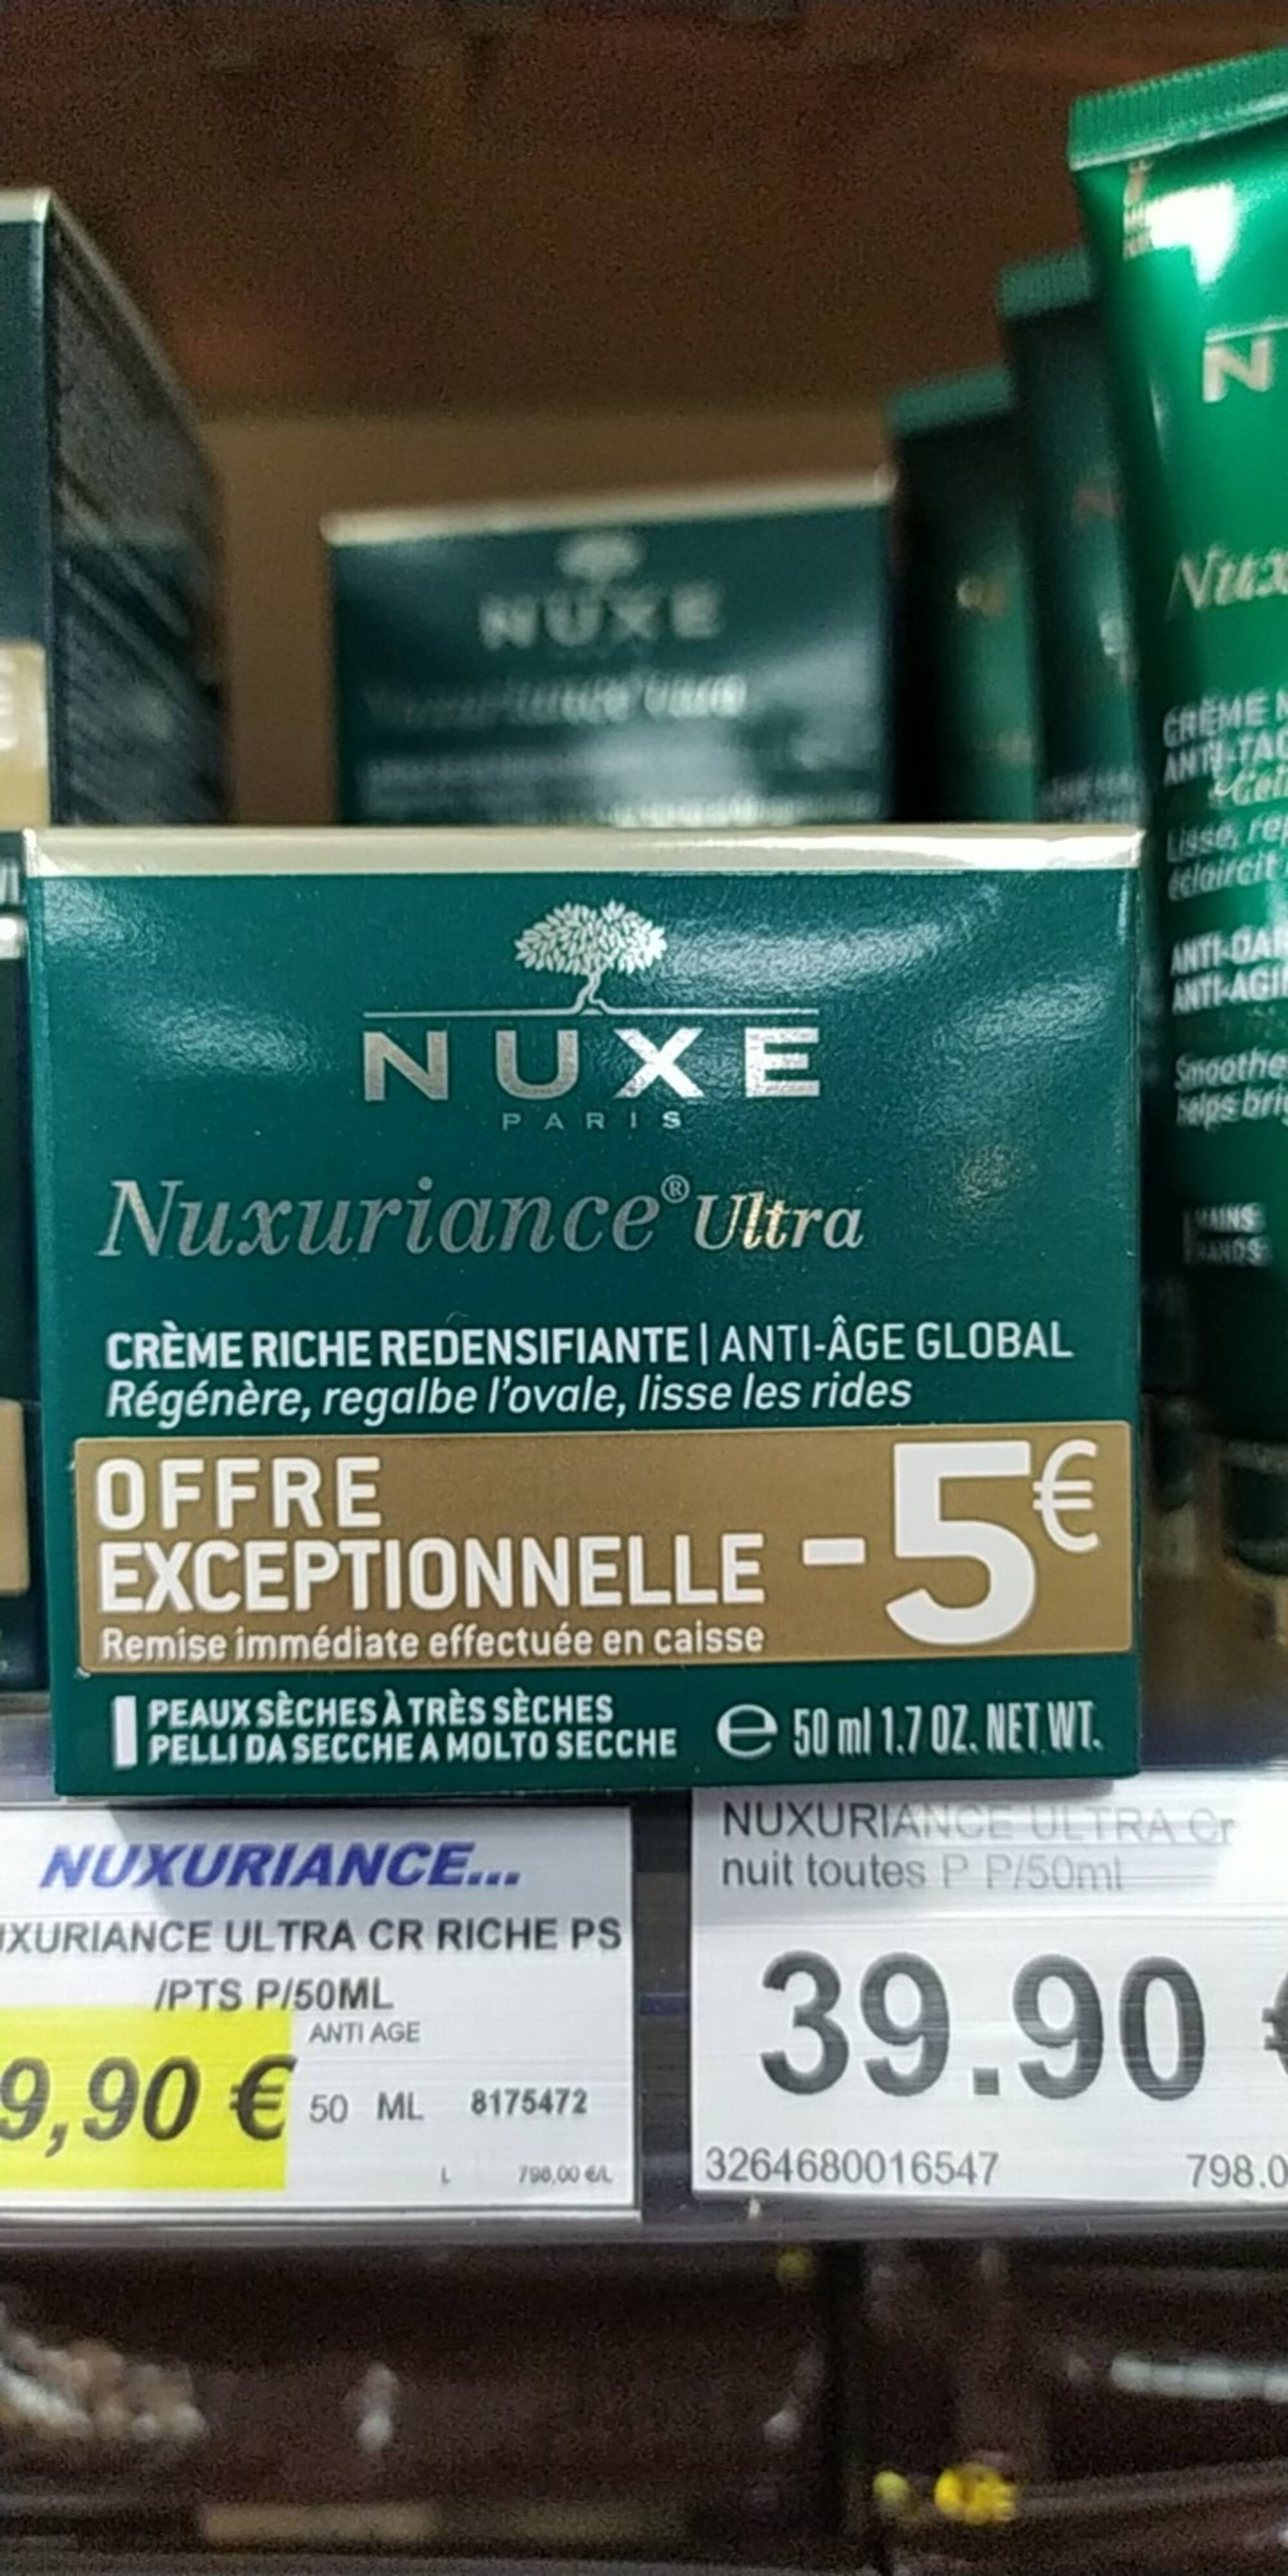 NUXE PARIS - Nuxuriance ultra - Crème riche redensifiante